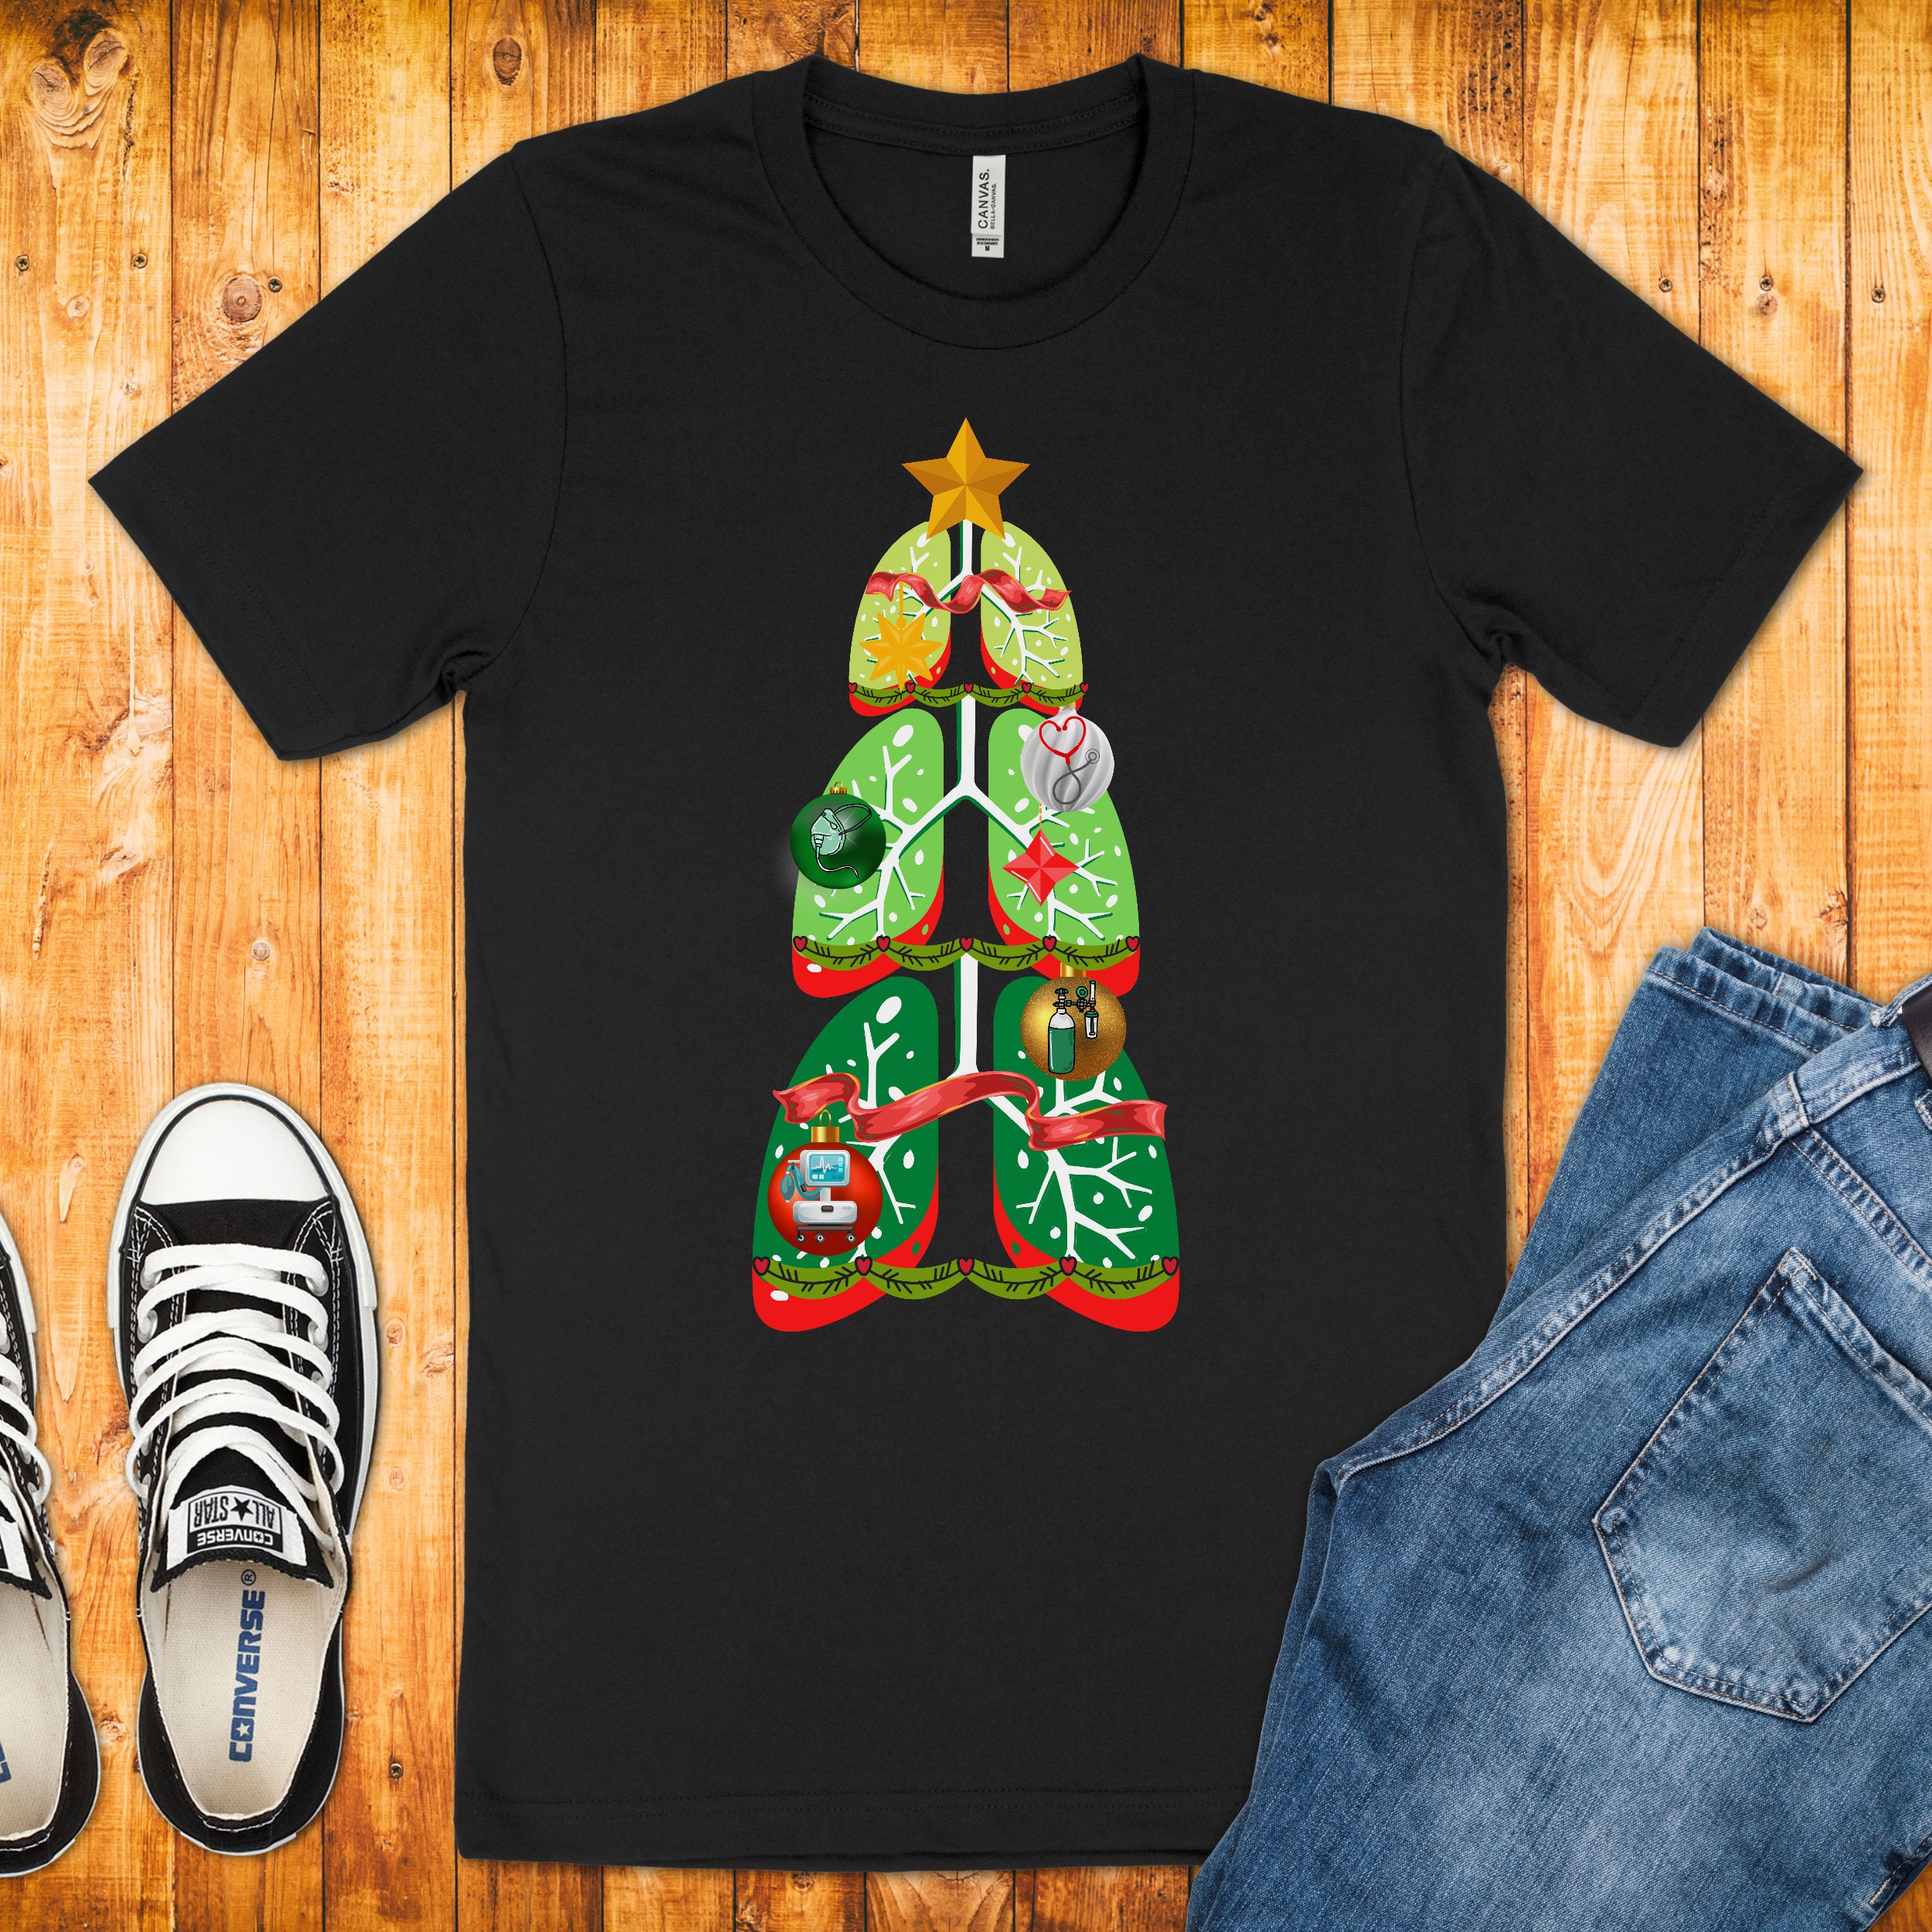 Christmas Tree Lung Shirt for Respiratory, Respiratory Therapist  Pulmonologist Christmas Shirt, Gift for Respiratory Therapist -  Israel